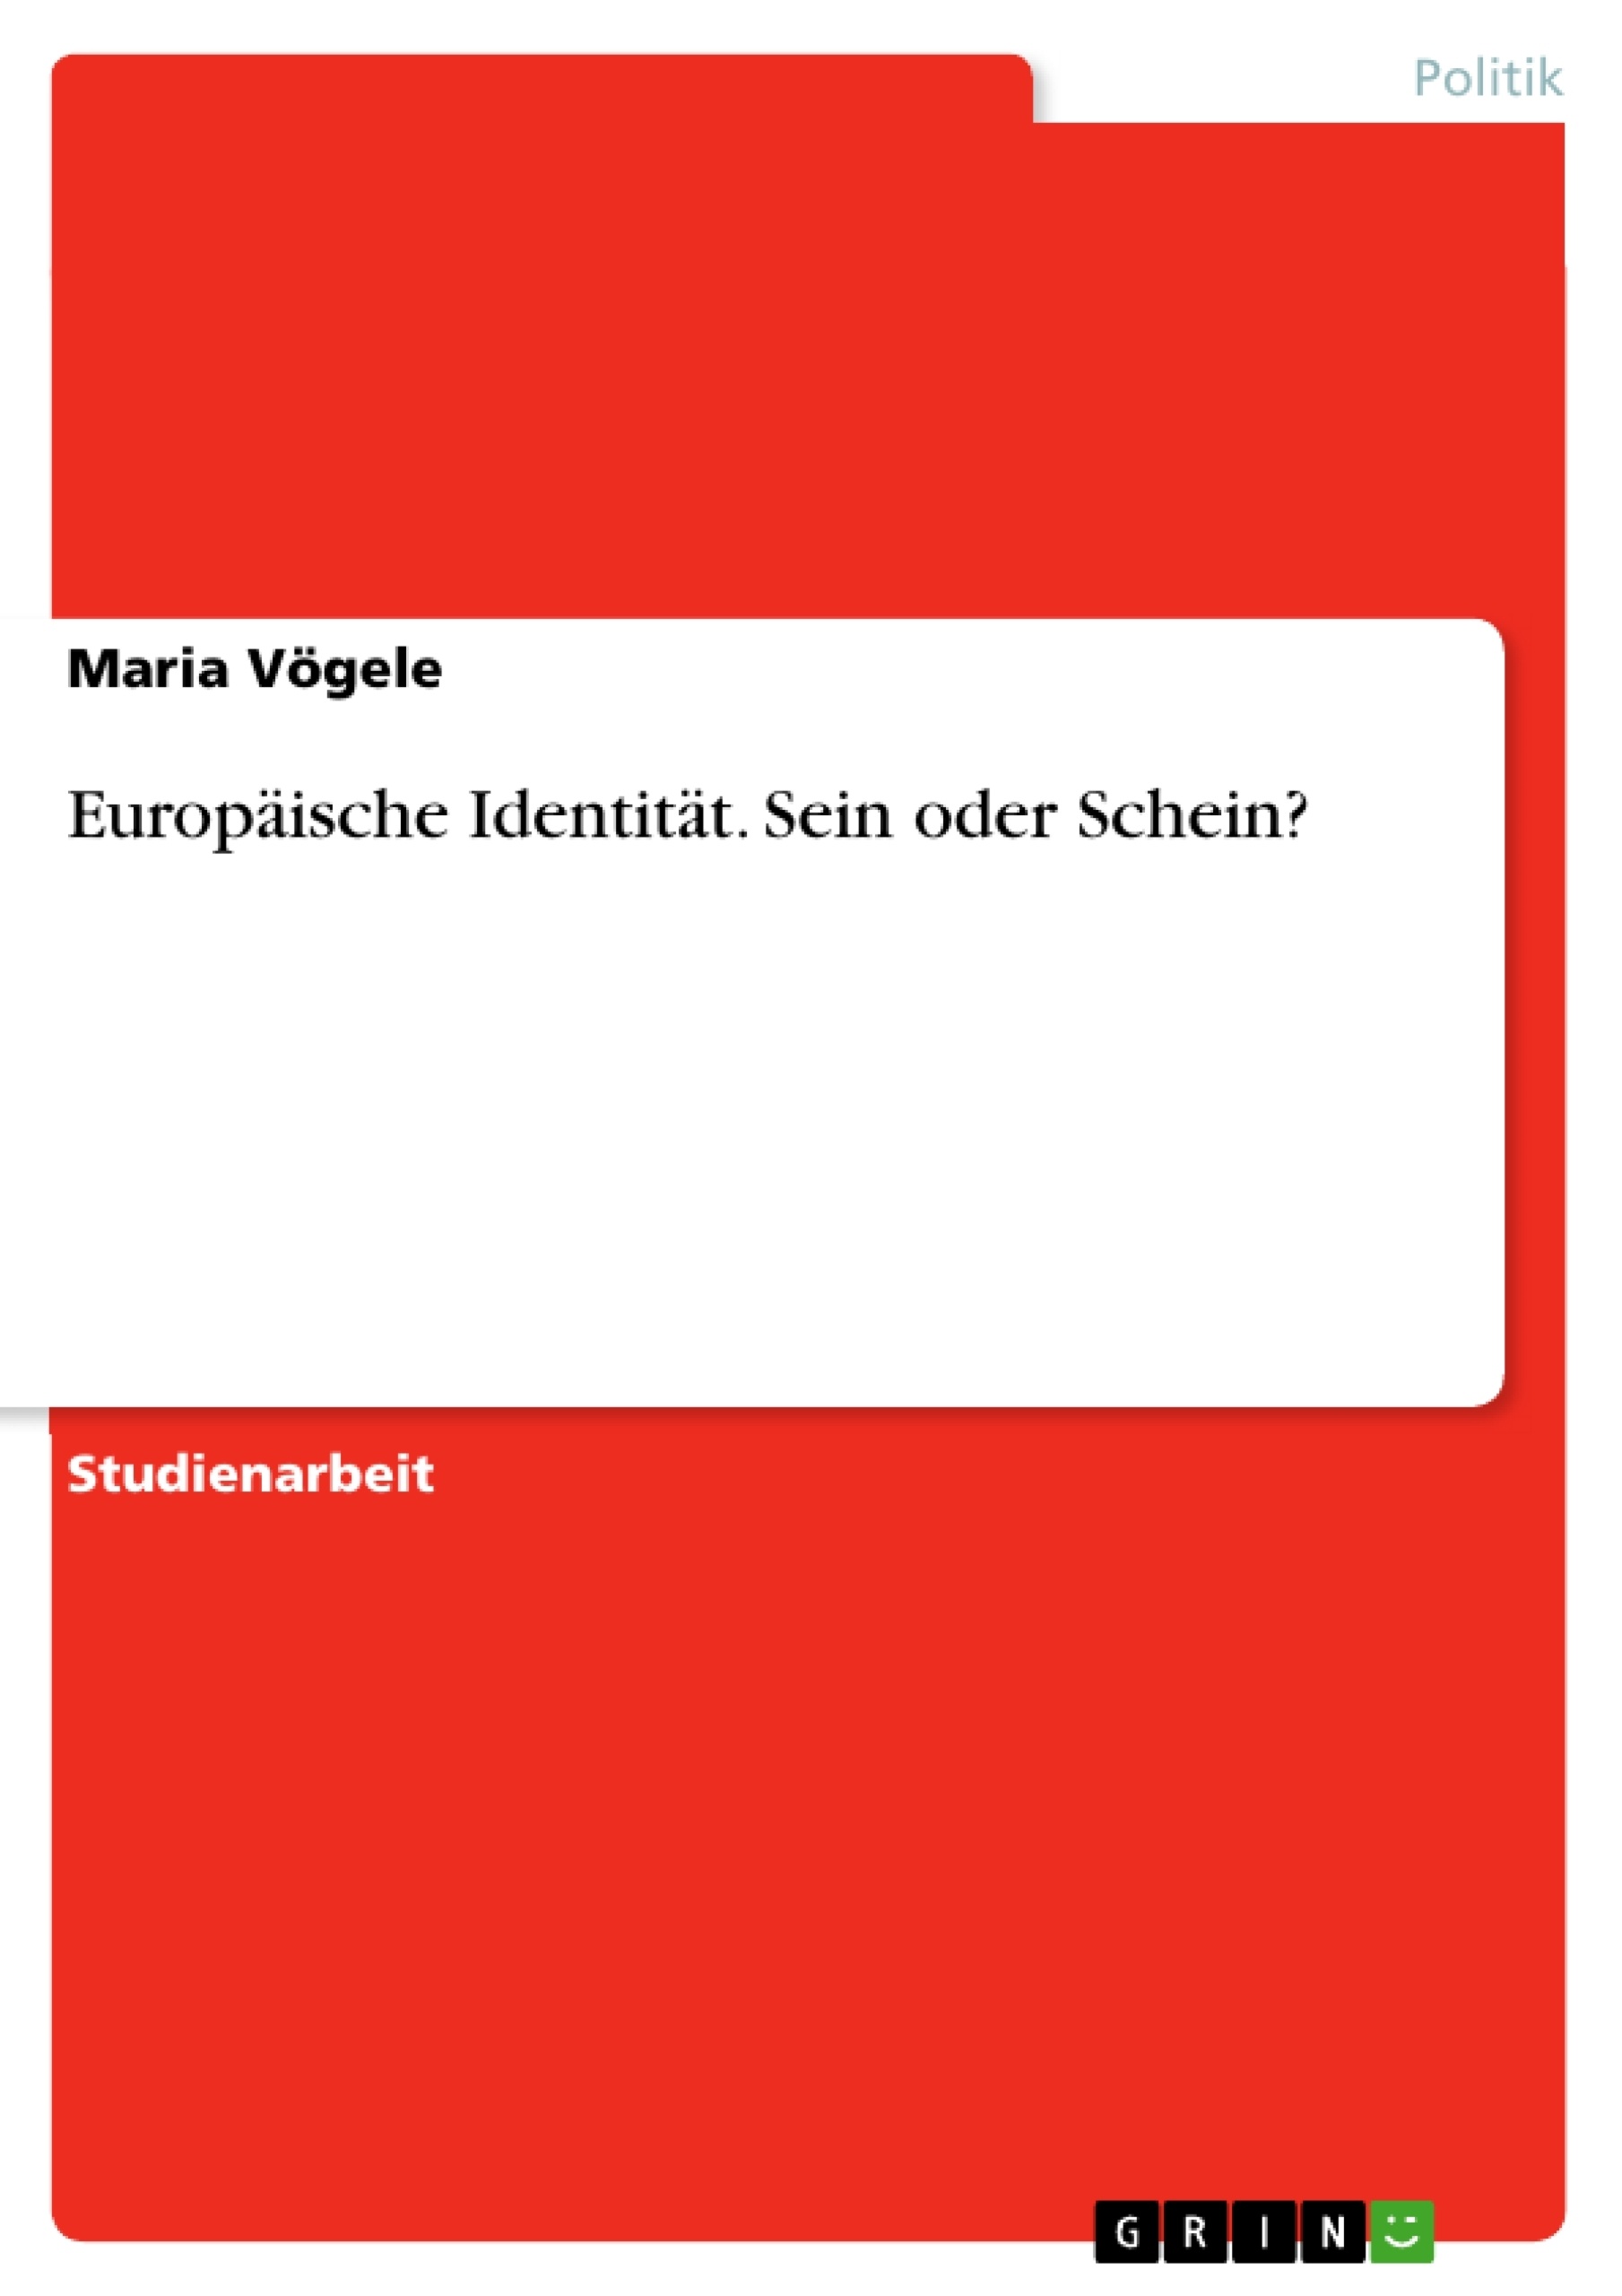 Title: Europäische Identität. Sein oder Schein?